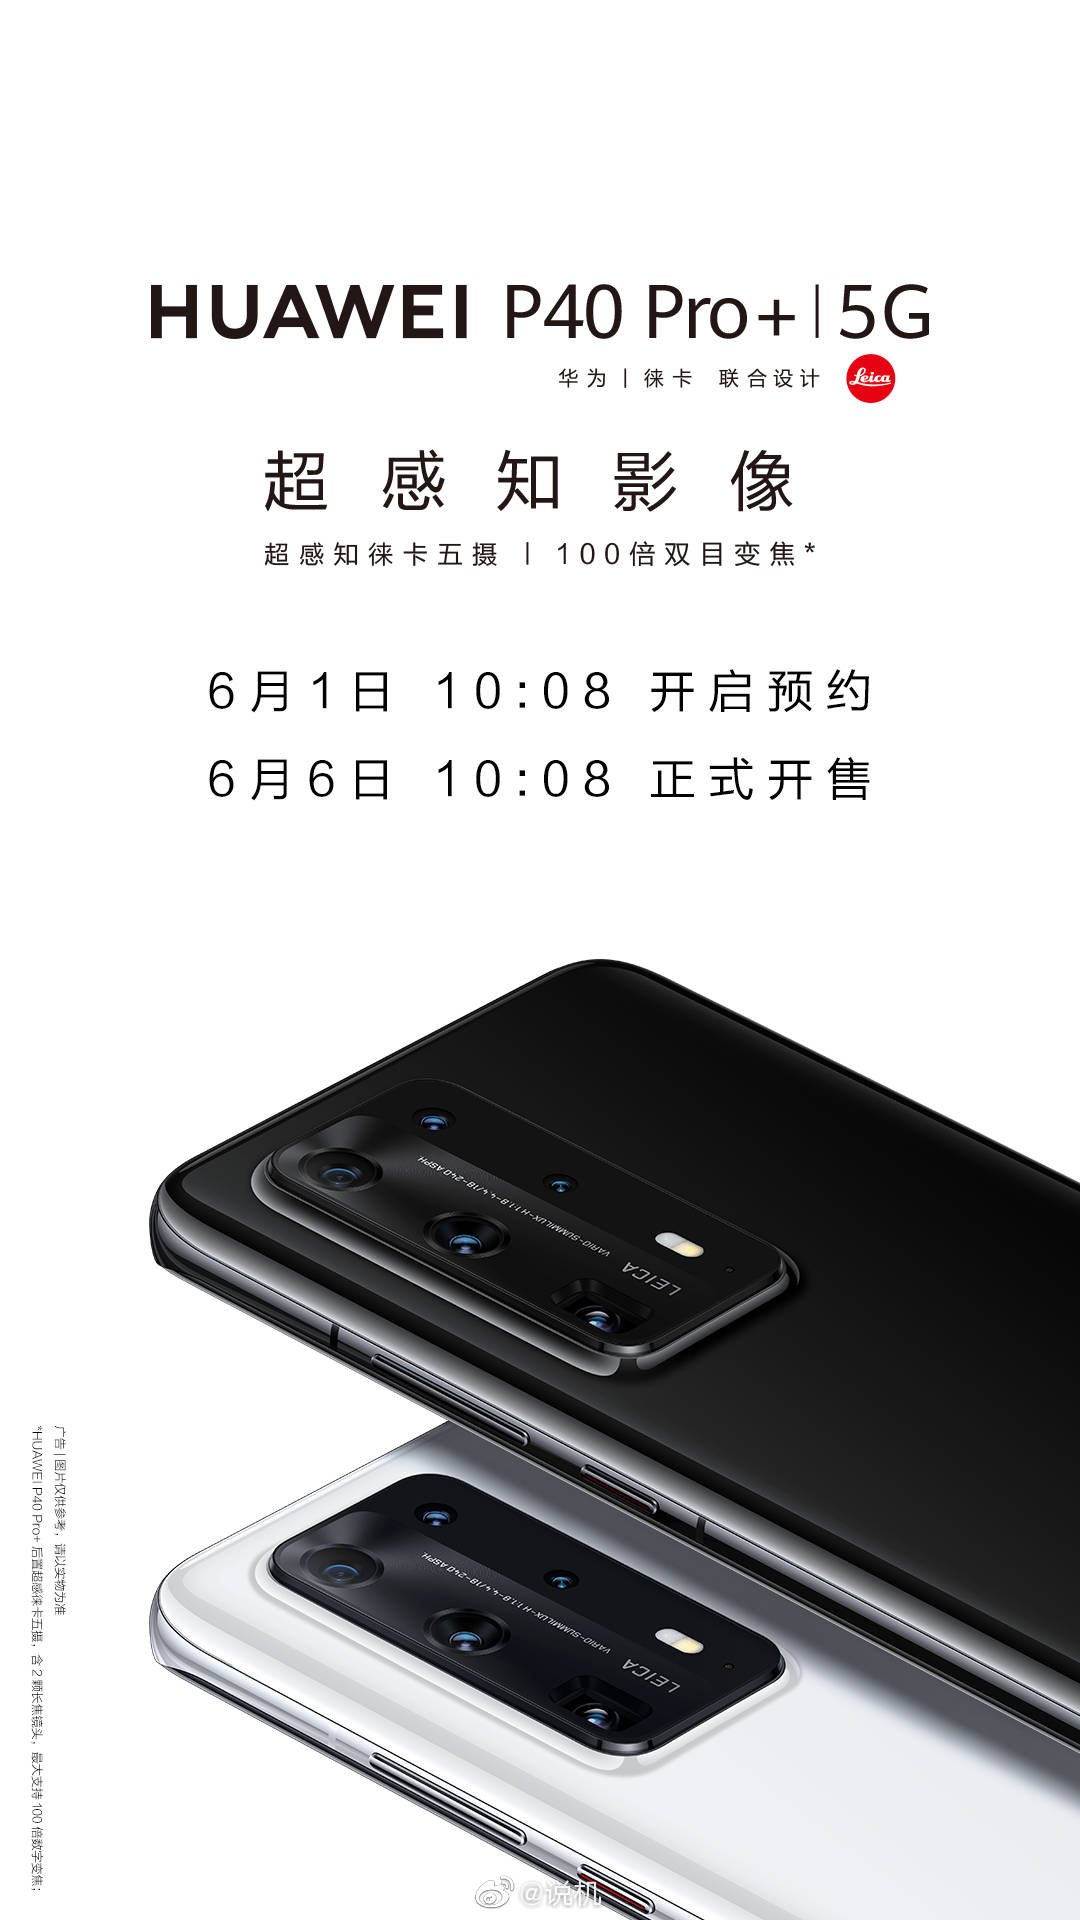 Huawei P40 Pro+ Sale Date